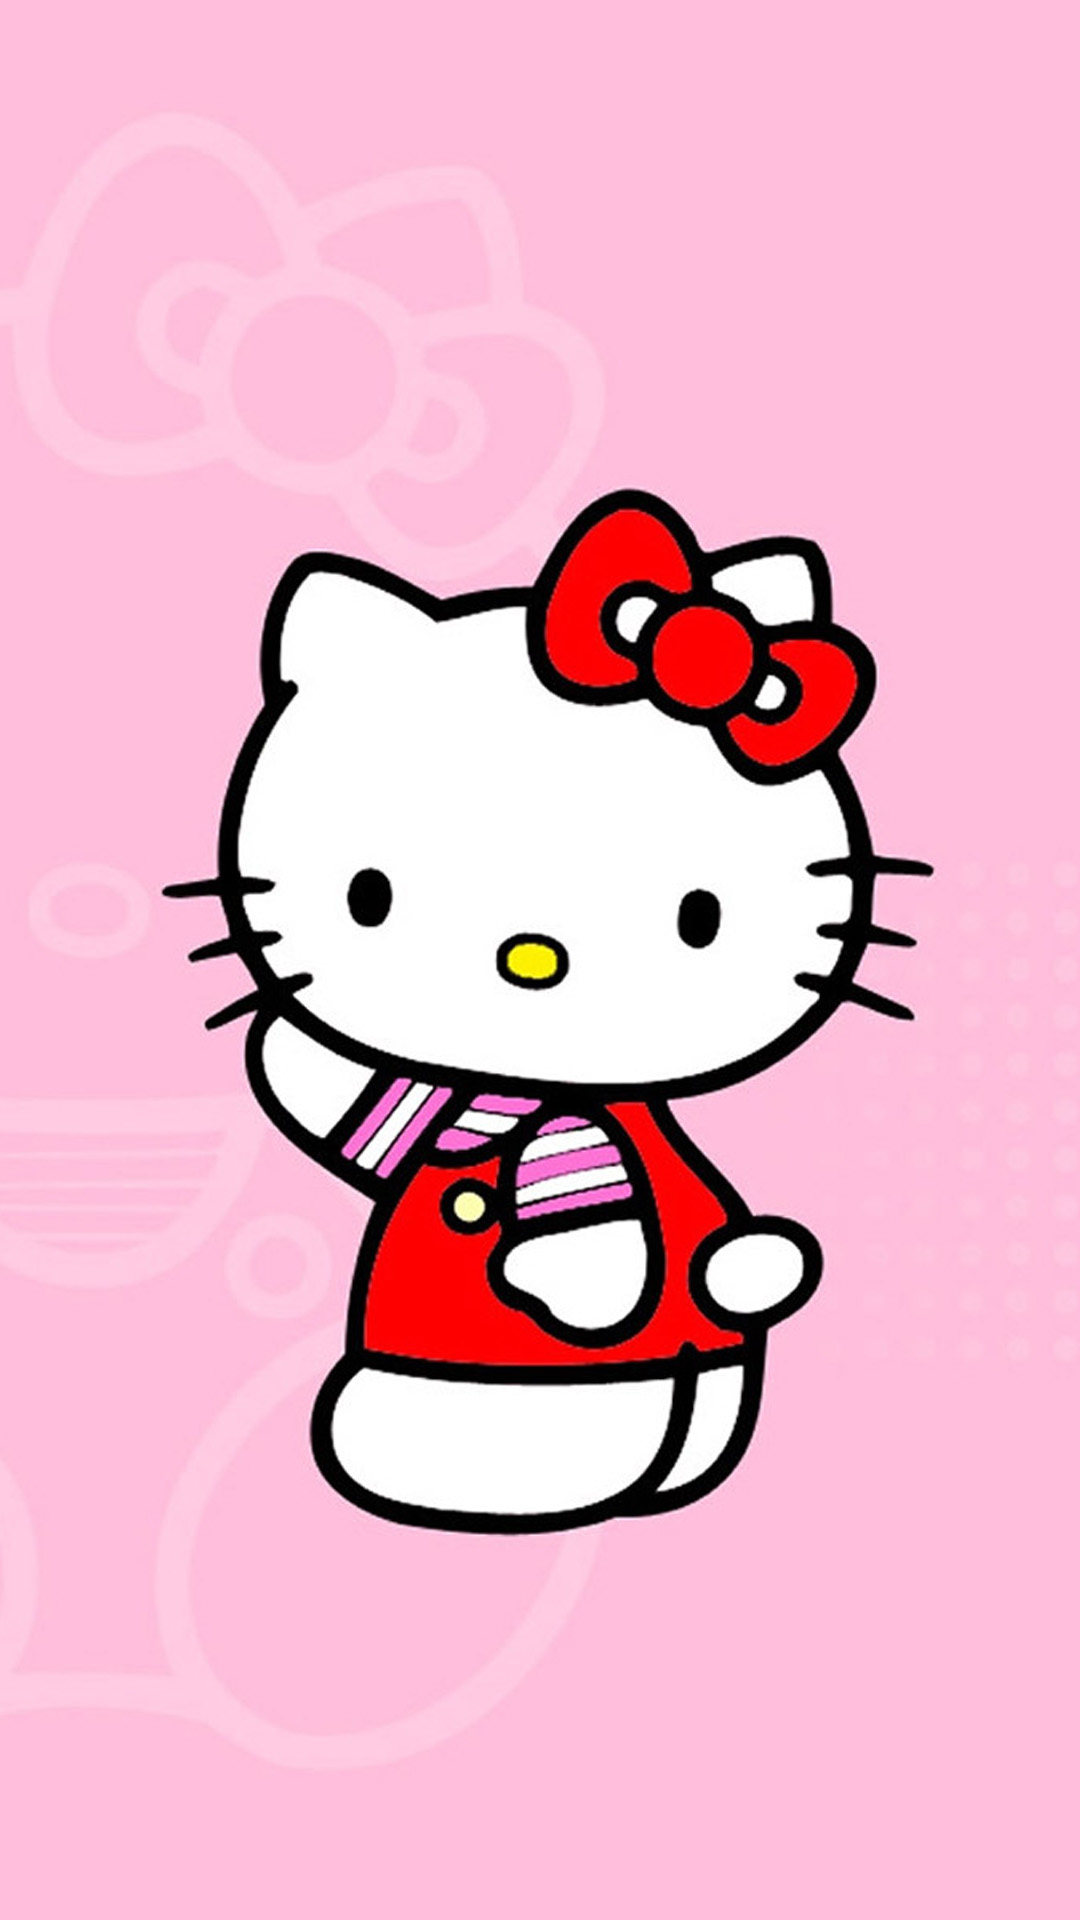 Hello Kitty Wallpapers: Các fan của Hello Kitty ơi, chúng tôi đã sẵn sàng những hình nền đáng yêu dành cho bạn rồi đấy! Hãy cập nhật ngay để làm mới giao diện điện thoại của bạn với những hình ảnh xinh xắn của Kitty.